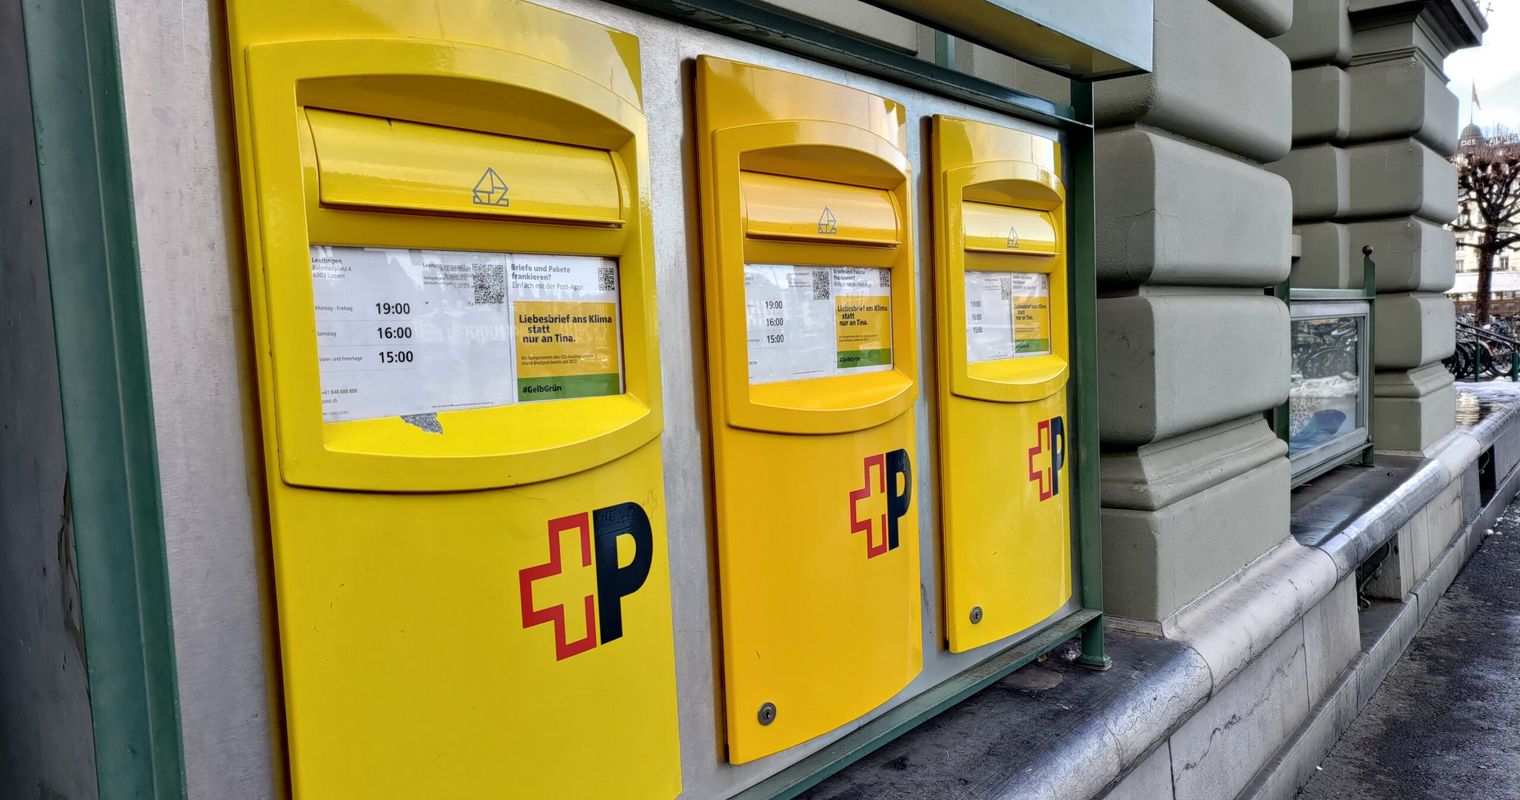 Post setzt in Ruopigen auf Automat statt Filiale